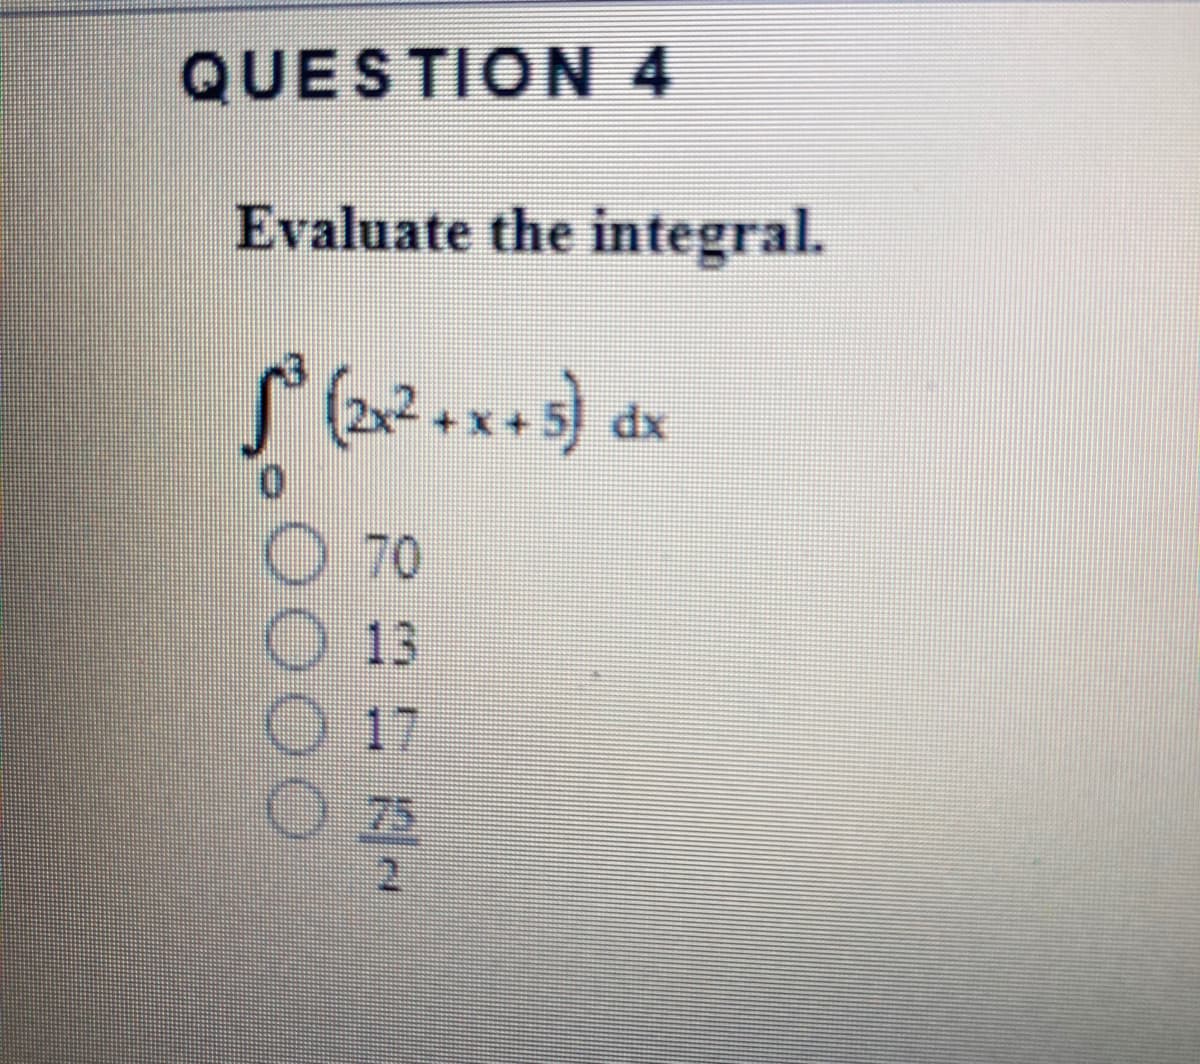 QUESTION 4
Evaluate the integral.
xp
O 70
13
O 17
O 25
2.
